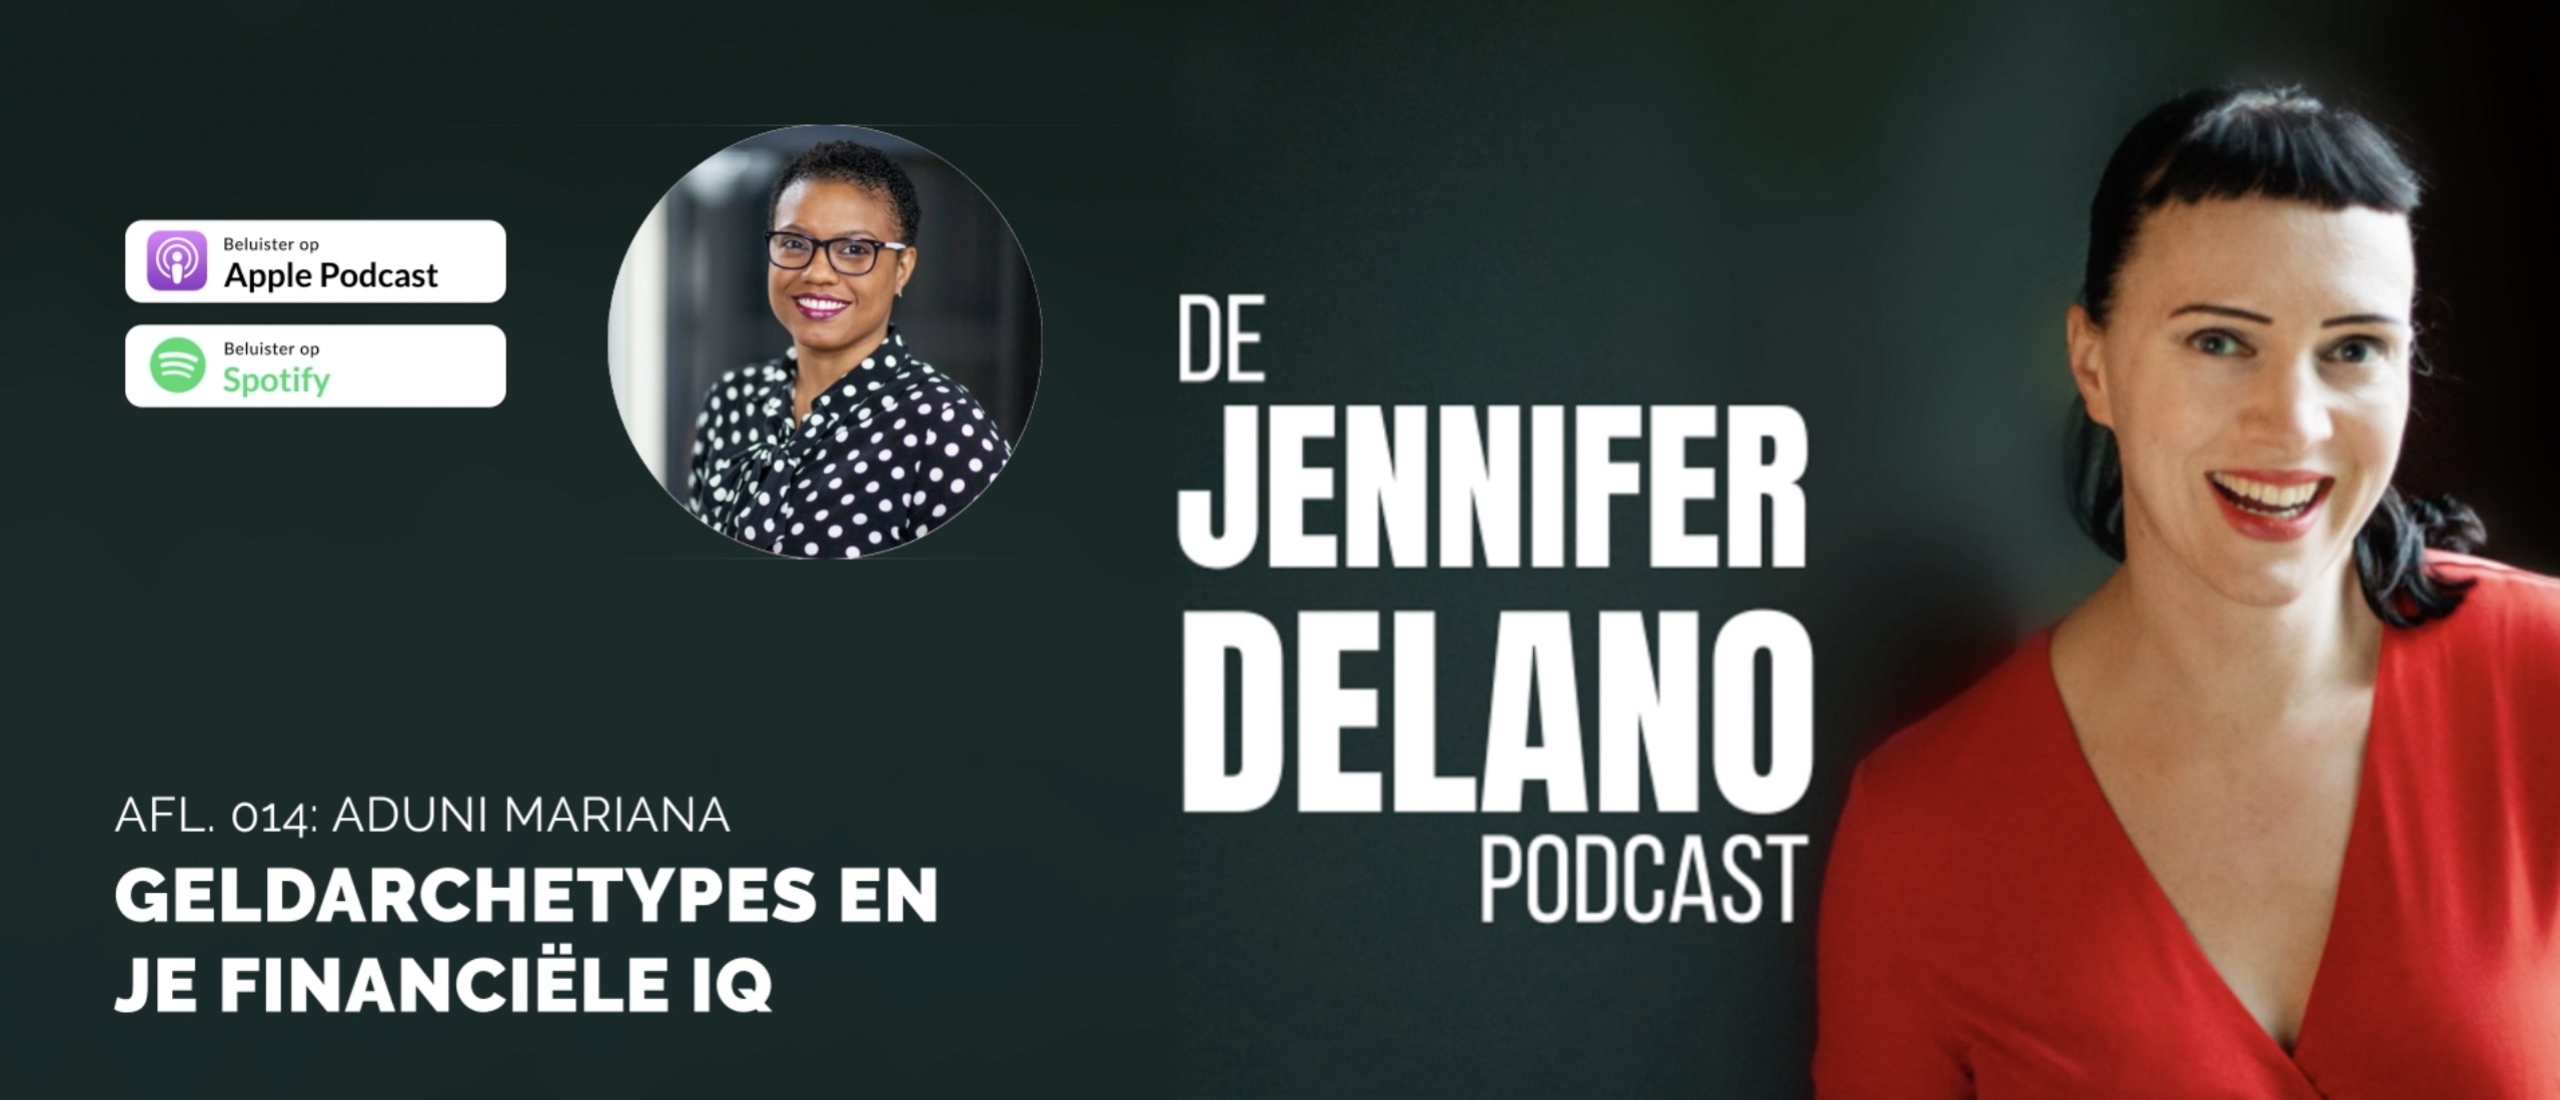 Geldarchetypes, financiële planning en je financiële IQ verhogen - De Jennifer Delano Podcast Afl. 014 met Aduni Mariana